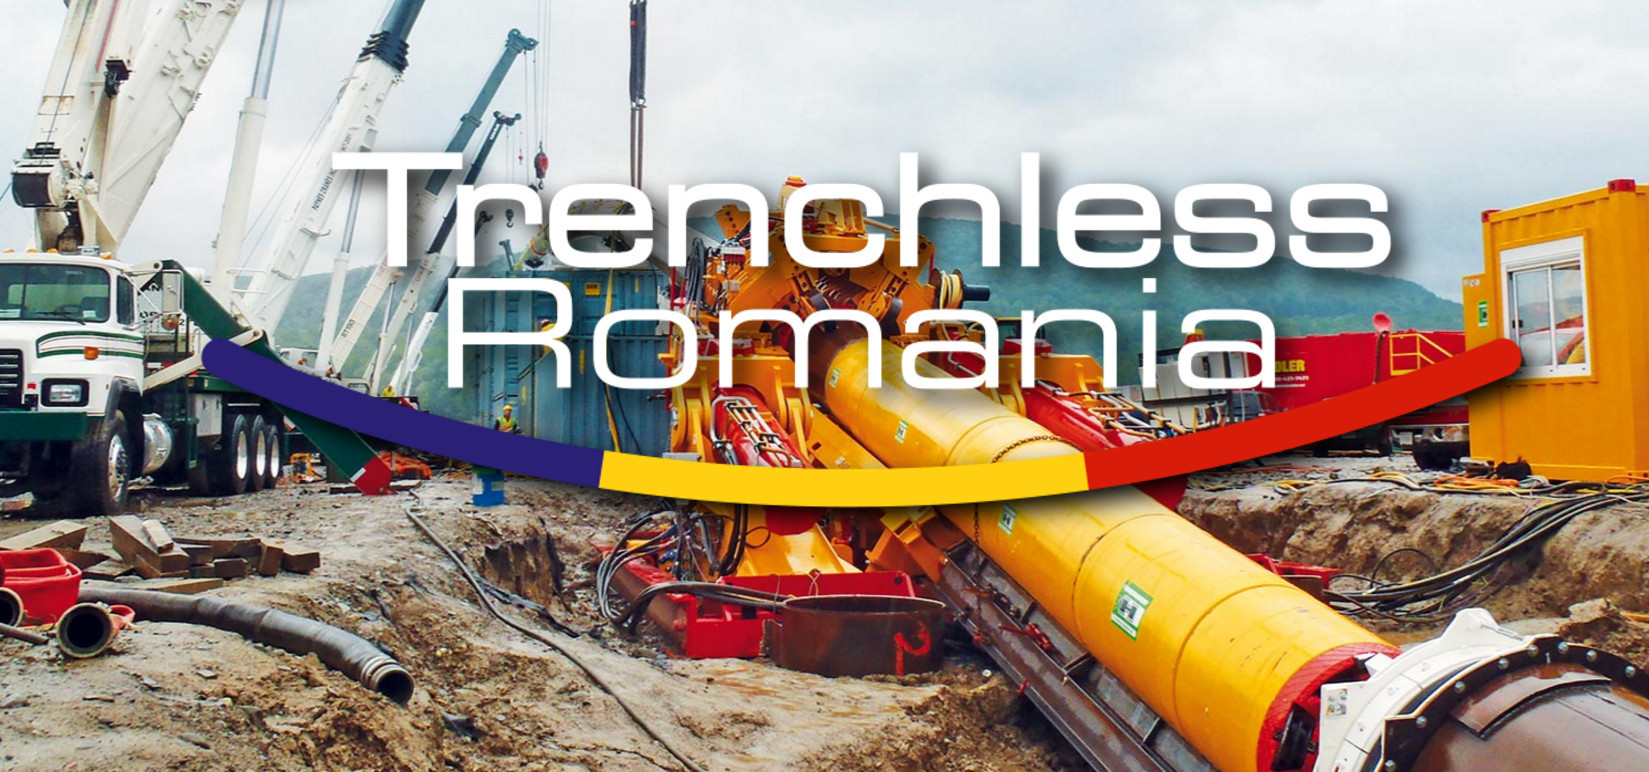 Trenchless Romania Conferinta si Expozitie 2017